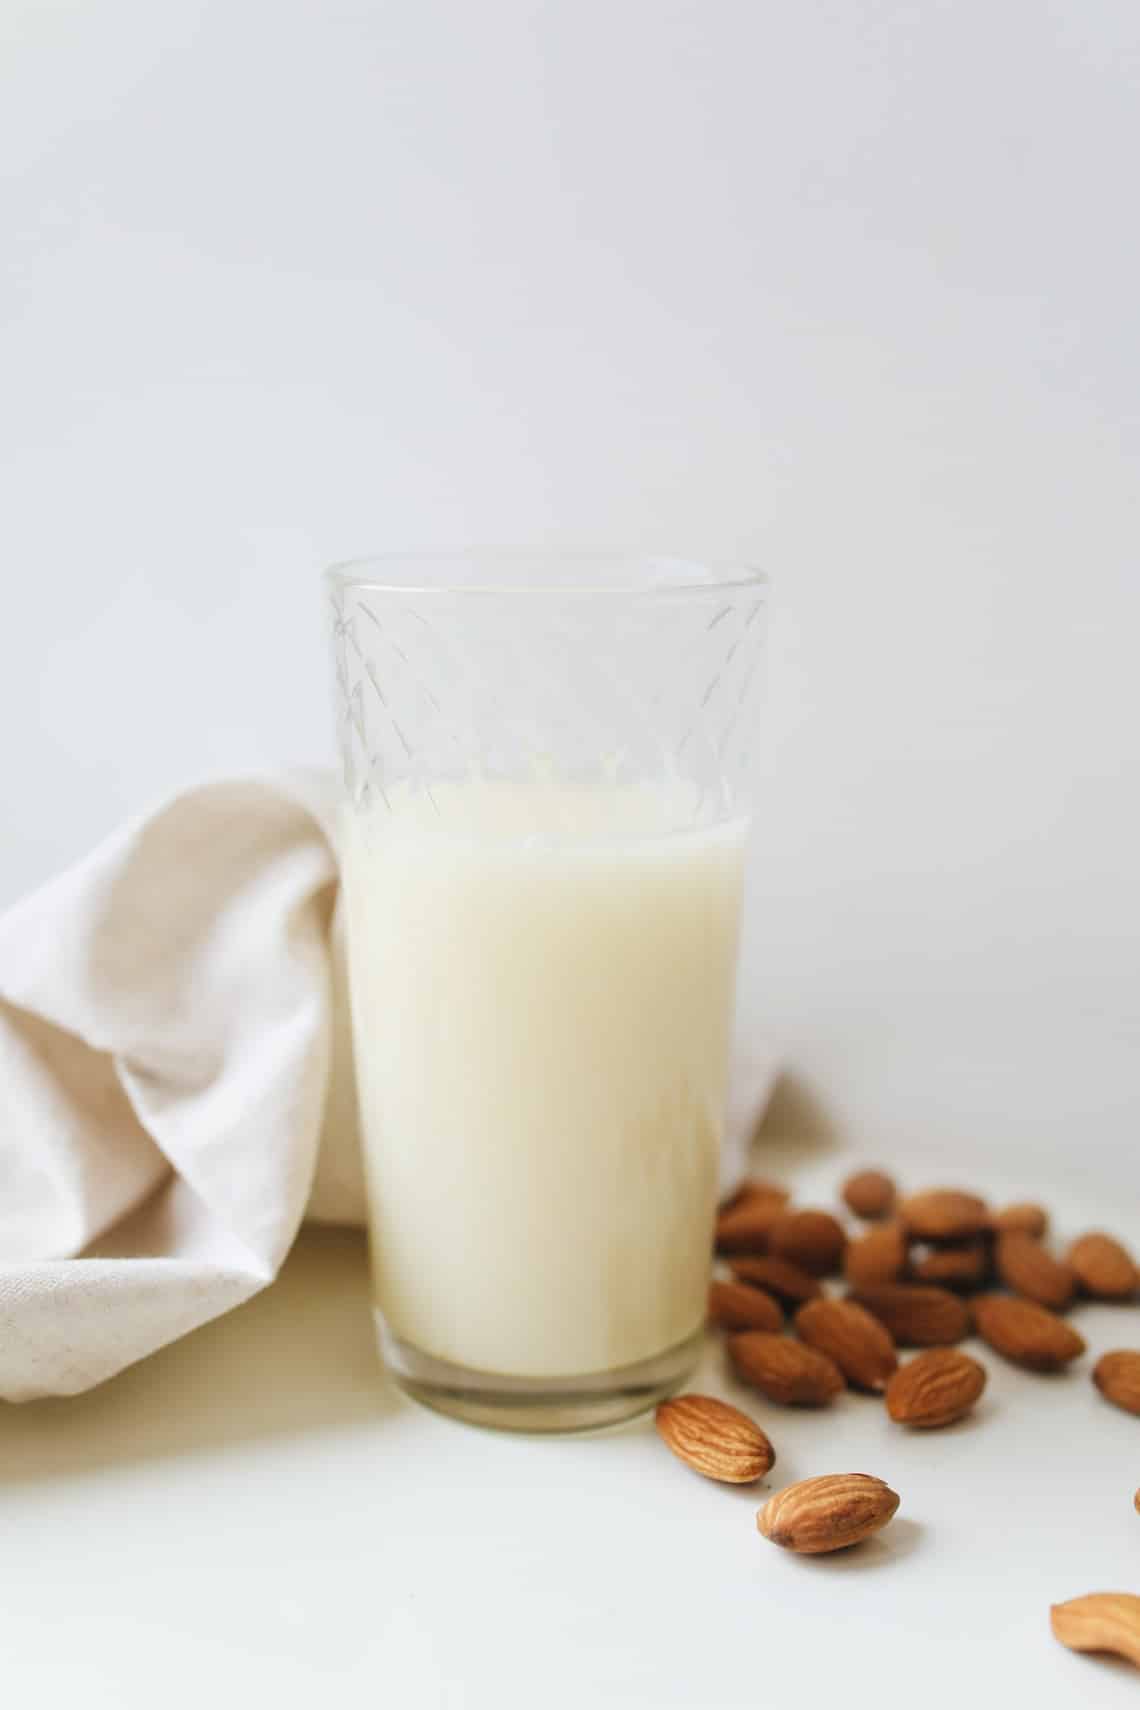 Próbálj ki alternatív tejtermékeket